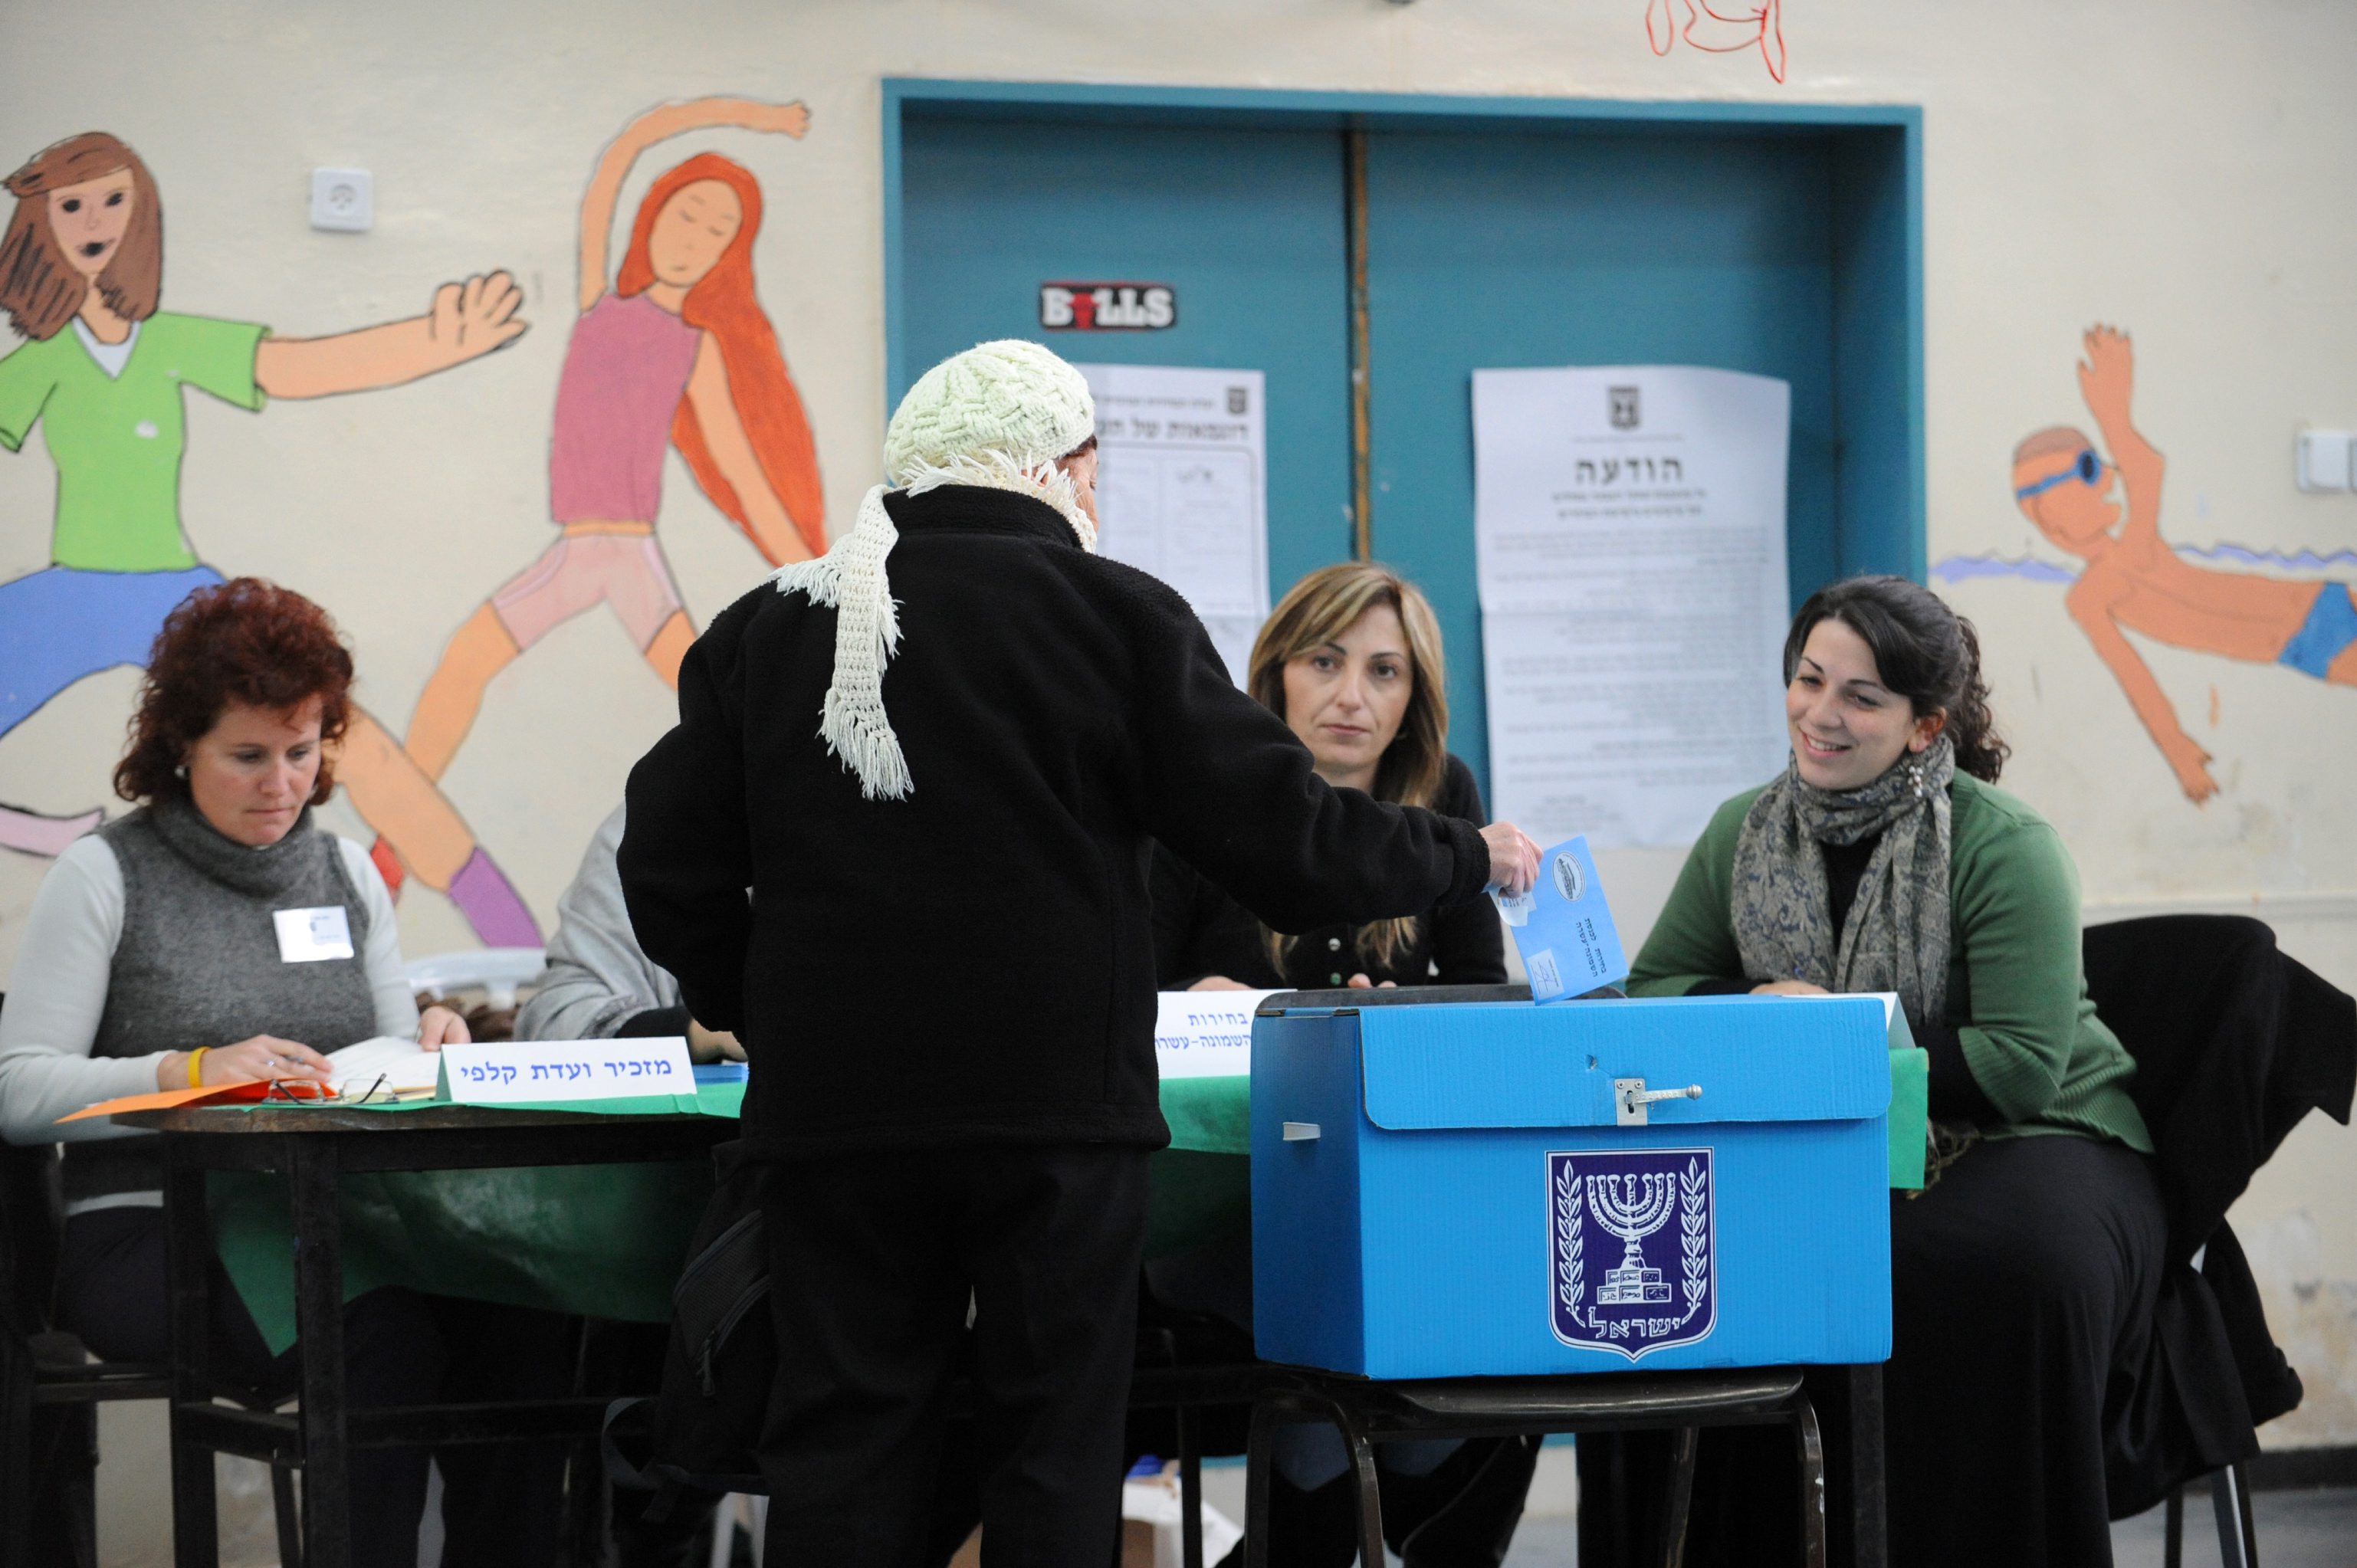 אזרחית מצביעה בקלפי בירושלים בבחירות לכנסת ה-18. צילום: עמוס בן גרשום, לע"מ